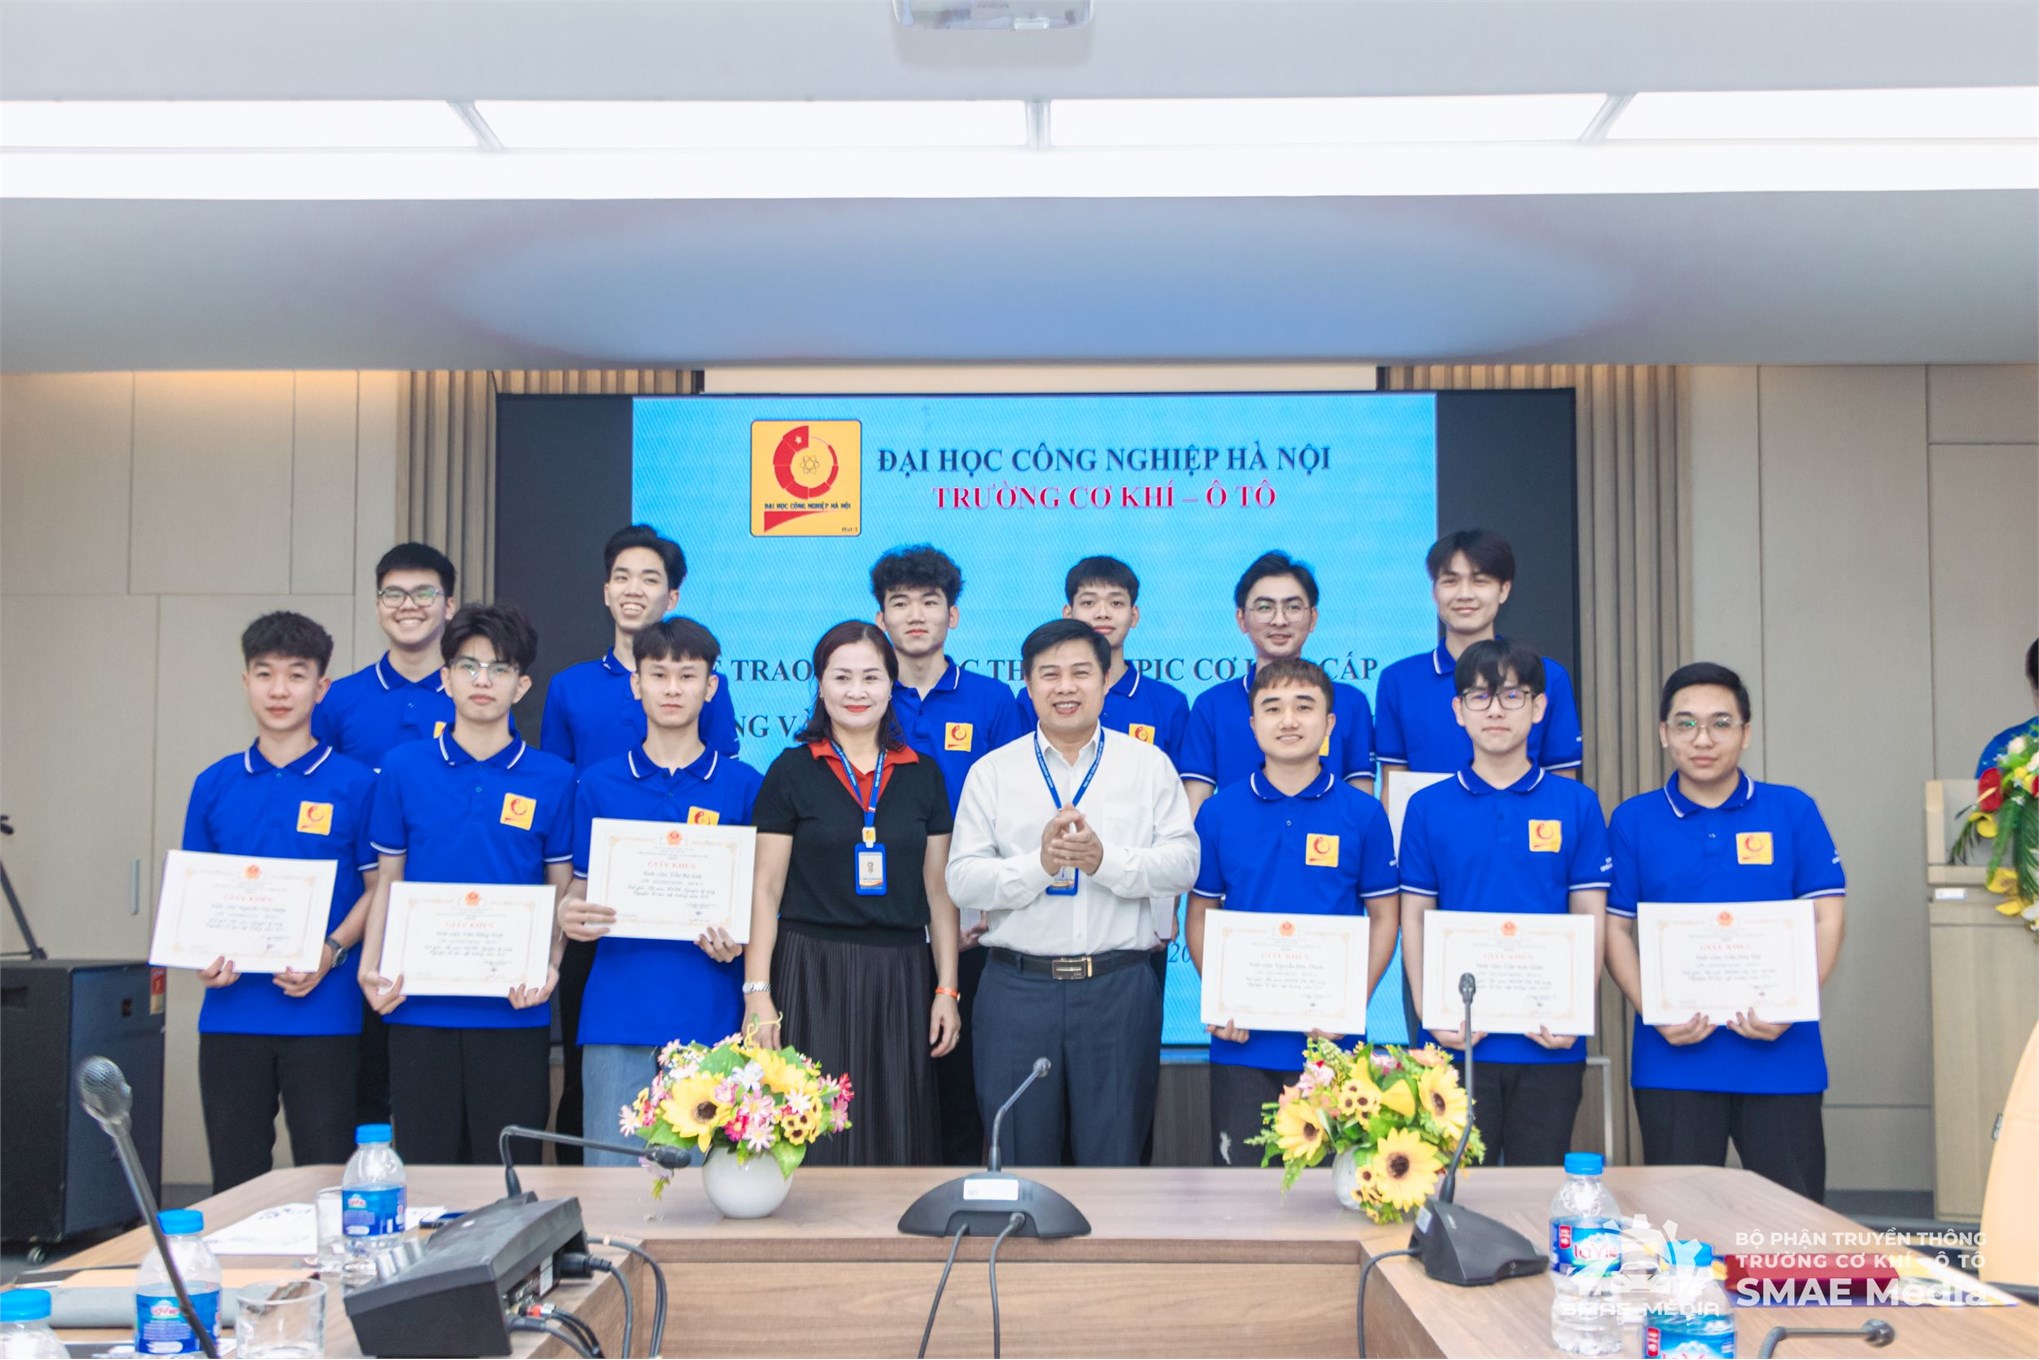 Đội tuyển Olympic Cơ học Trường Cơ khí – Ô tô, Đại học Công nghiệp Hà Nội quyết tâm ra quân thắng lợi